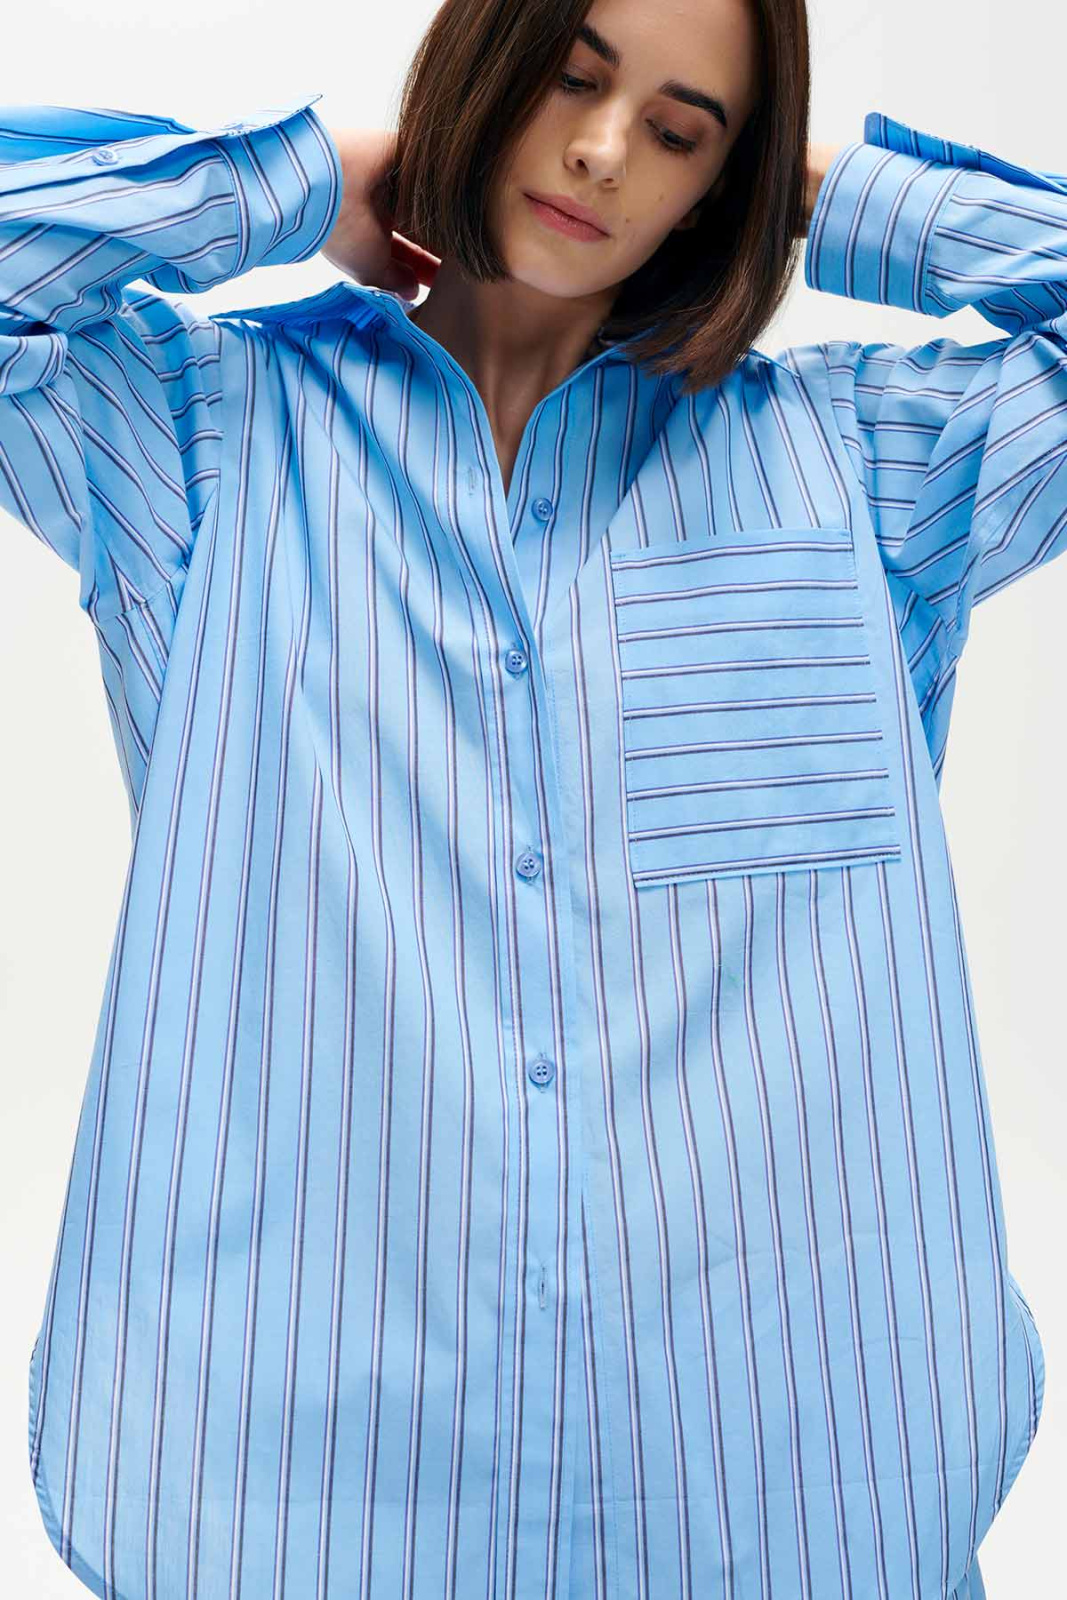 Kora Stripes Shirt Blue Outlet Elementy